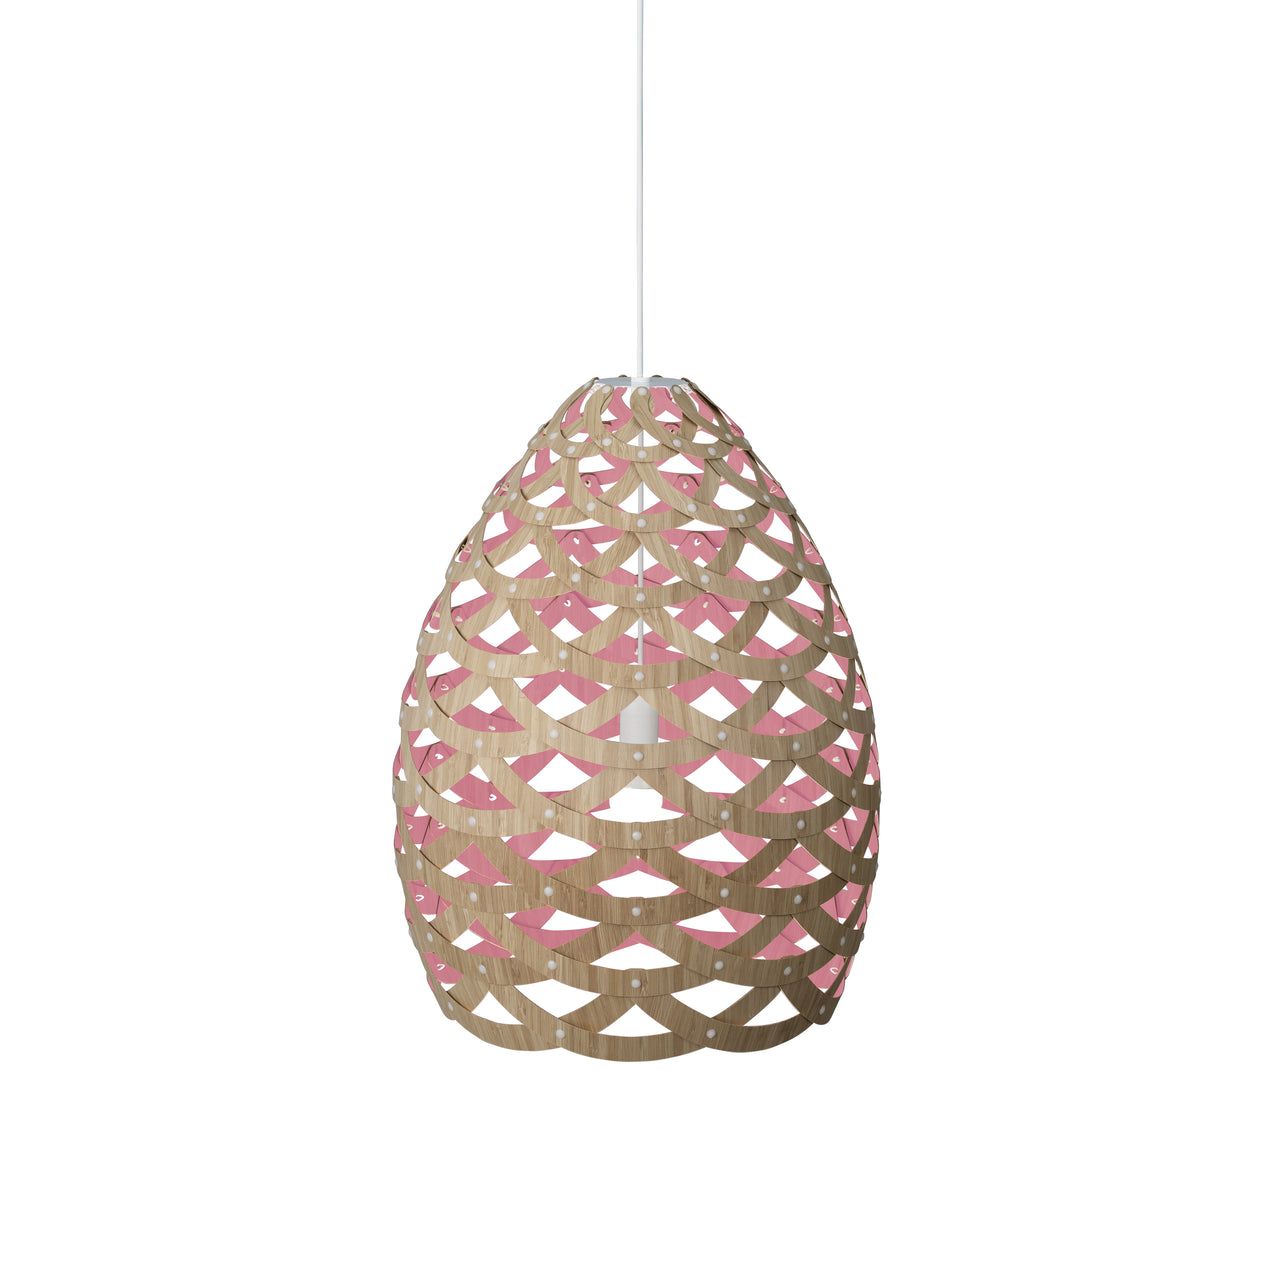 Tūī Pendant Light: Large + Bamboo + Pink + White